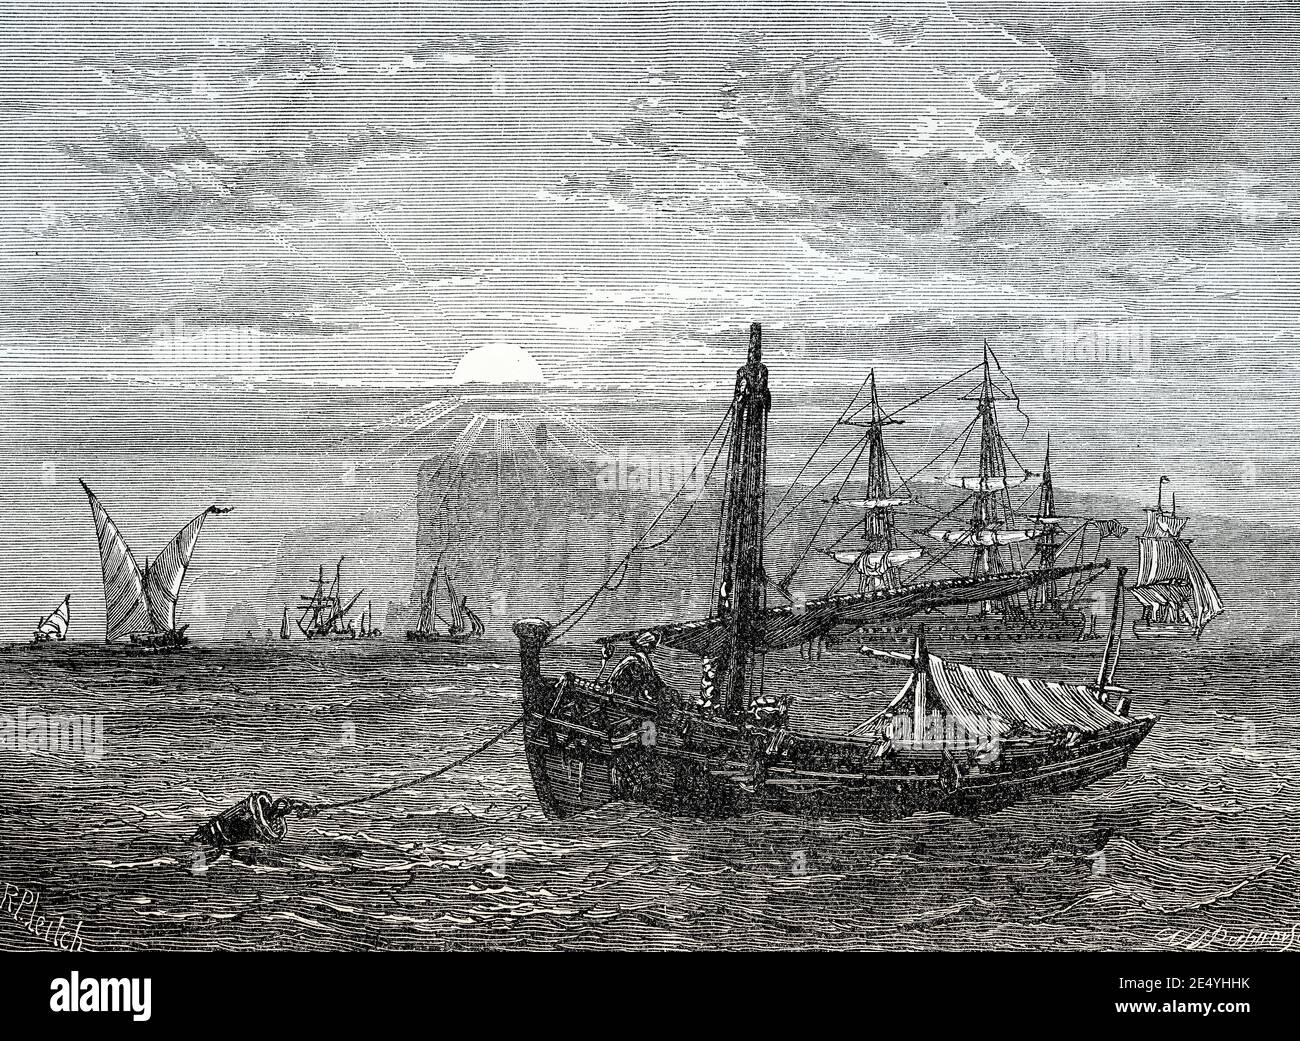 Vue historique du cap Trafalgar, province de Cádiz, Espagne, XVIIIe siècle, des batailles britanniques sur terre et mer par James Grant Banque D'Images